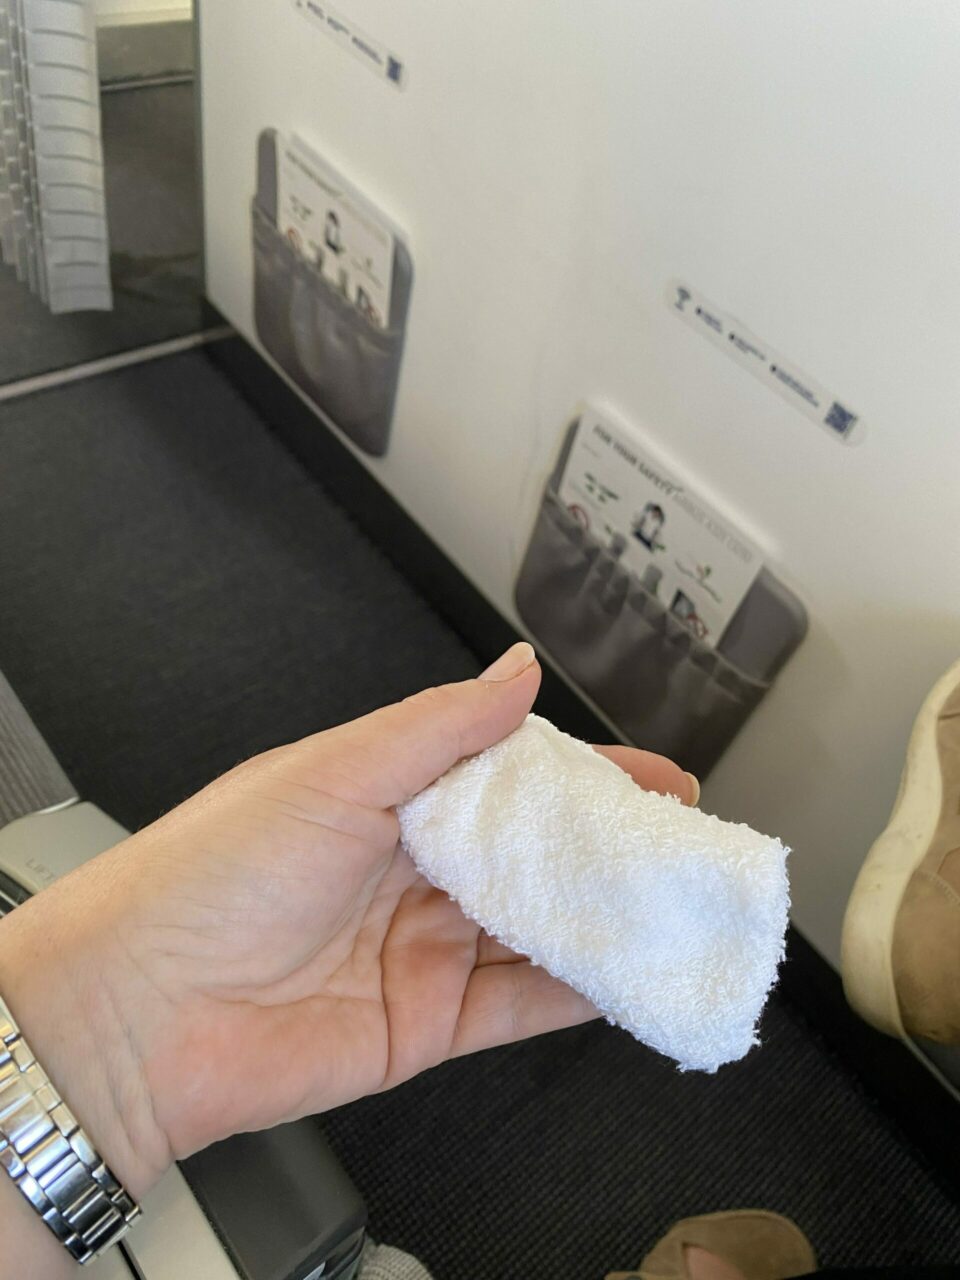 Finnair A321 short haul business class hot towel 